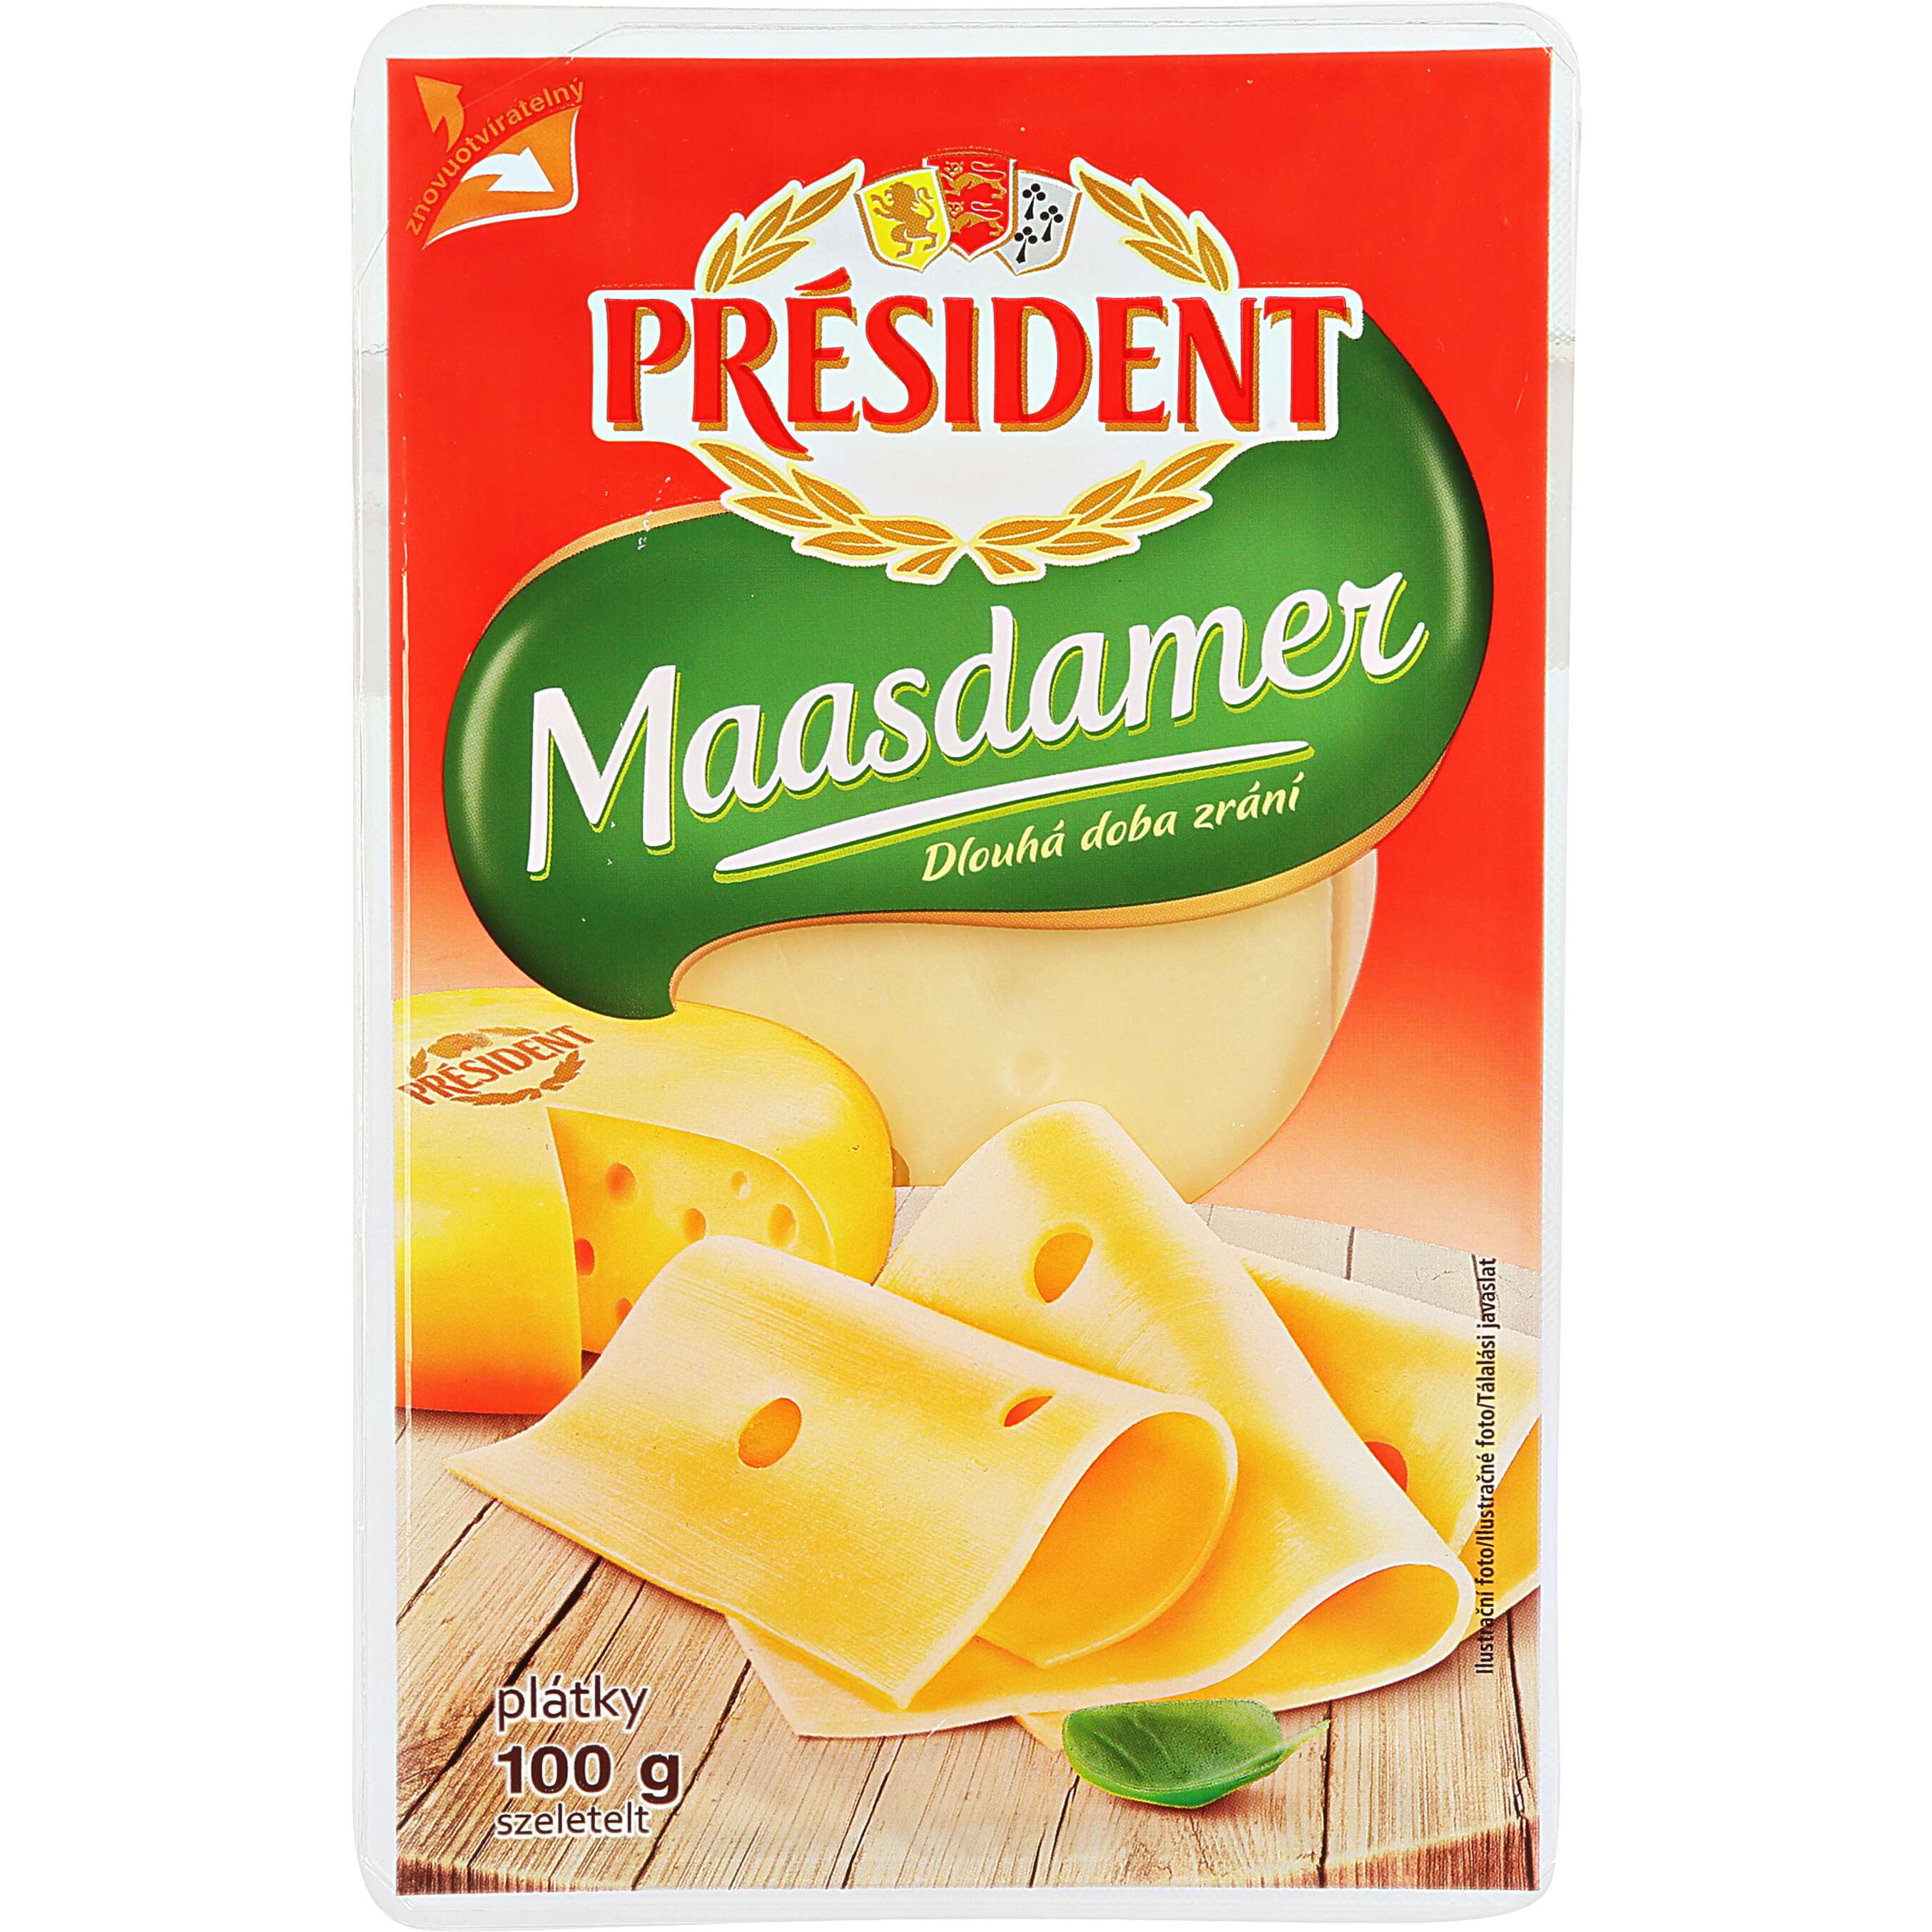 Zobrazit nabídku Président Plátkový sýr